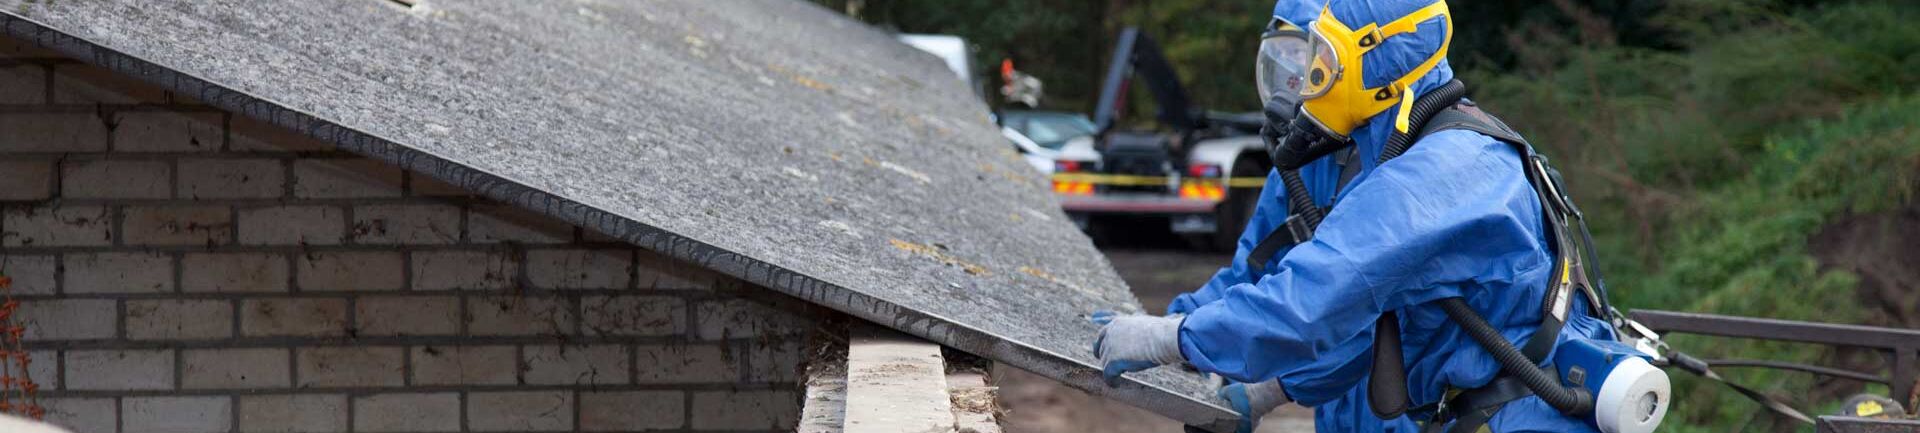 Das Bild für Asbest Sachkunde zeigt zwei Arbeiter in Schutzanzügen und Atemmasken, die ein Dach inspizieren.